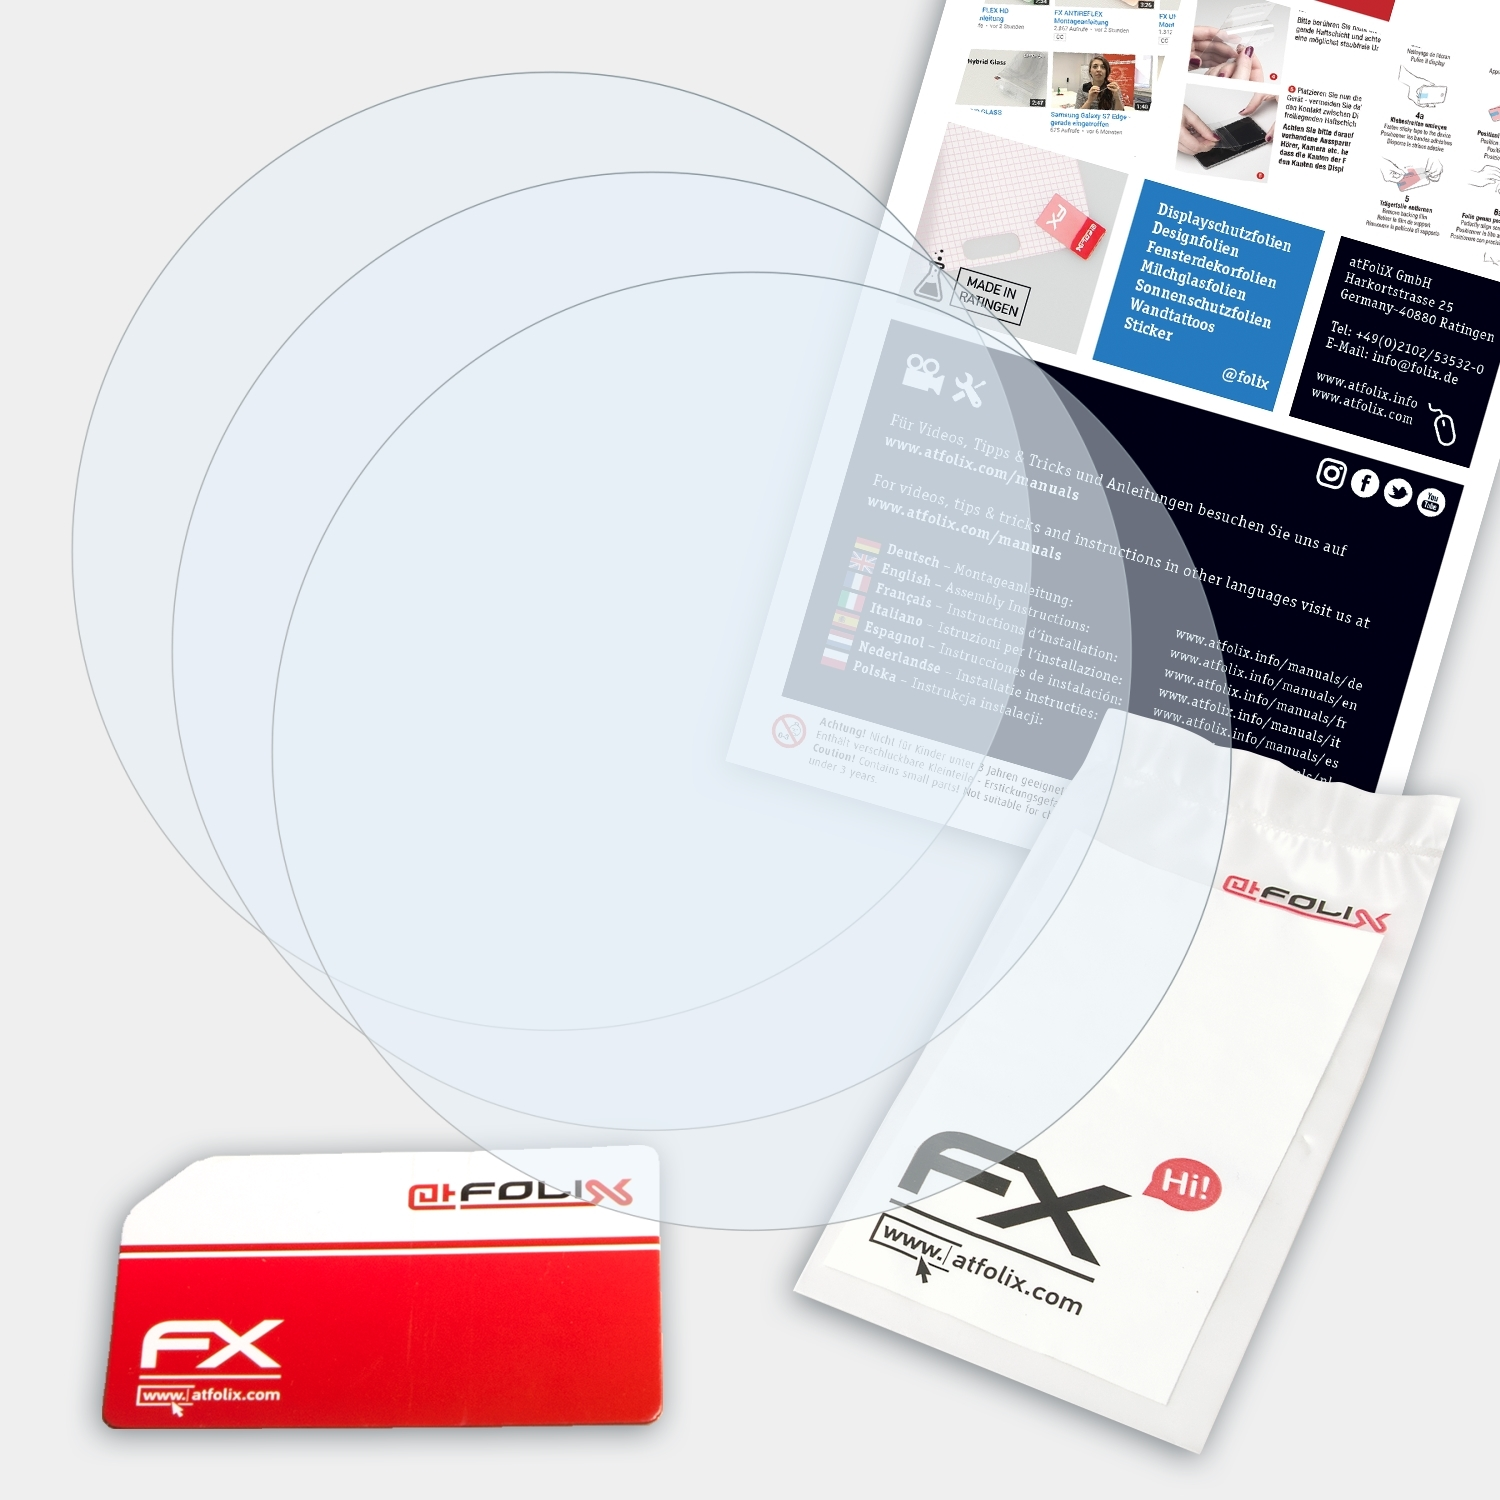 ATFOLIX 3x FX-Clear Displayschutz(für Chronos) Fenix Garmin